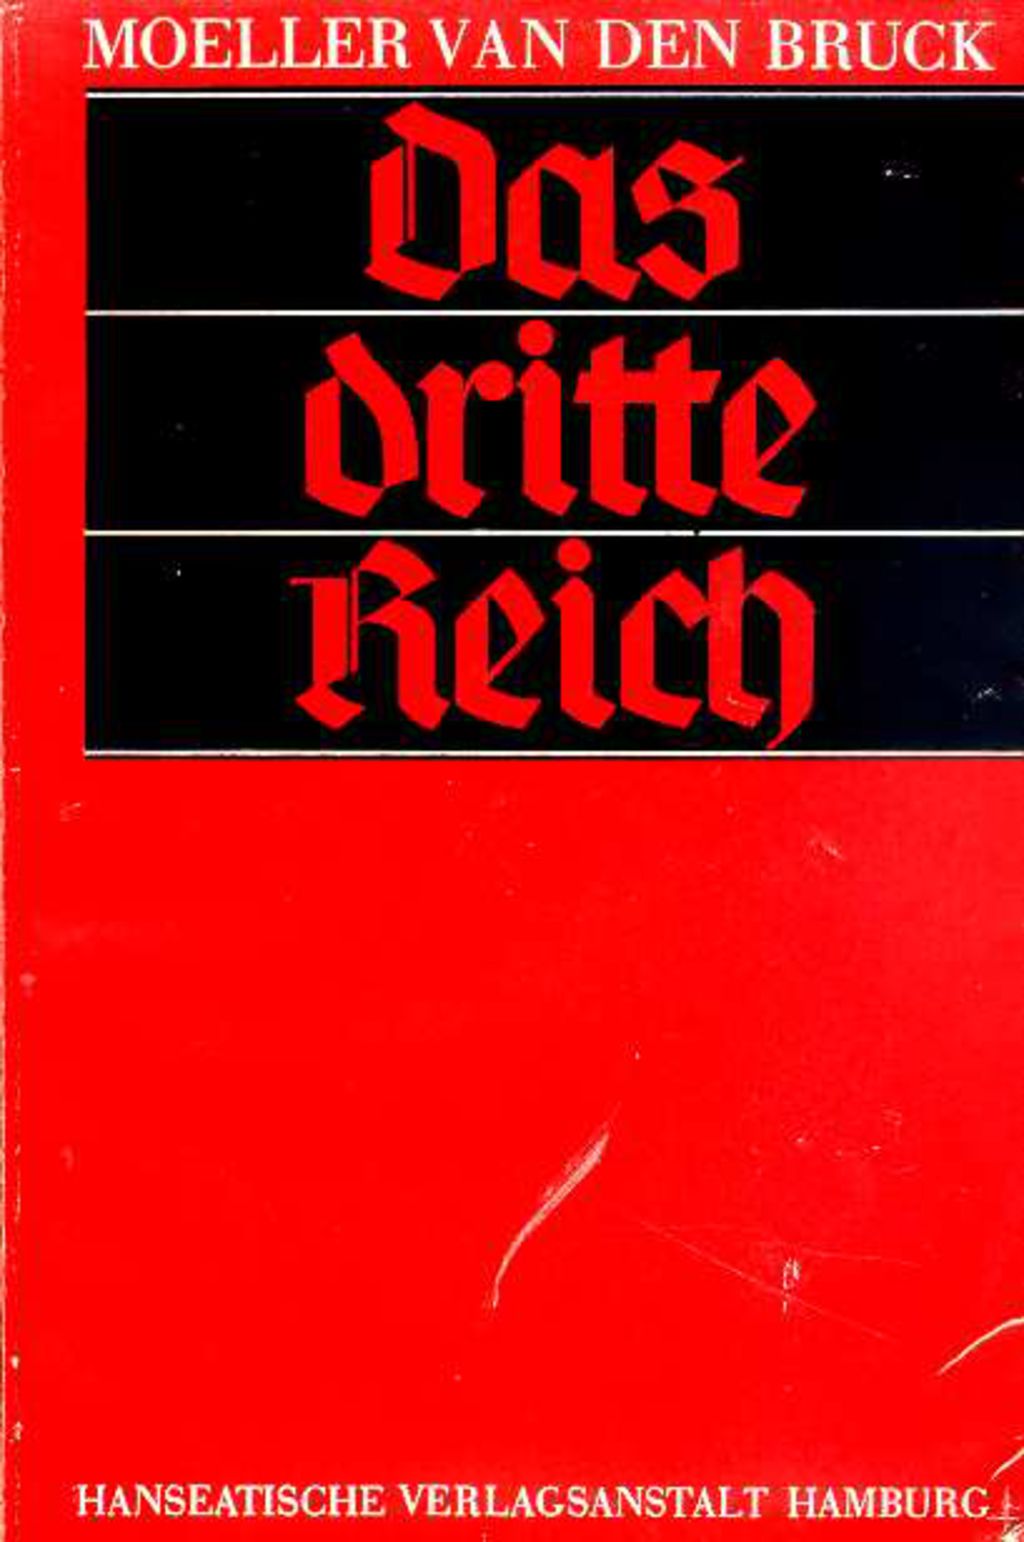 Exponat: Buch: Moeller van der Bruck, Arthur "Das dritte Reich", 1931